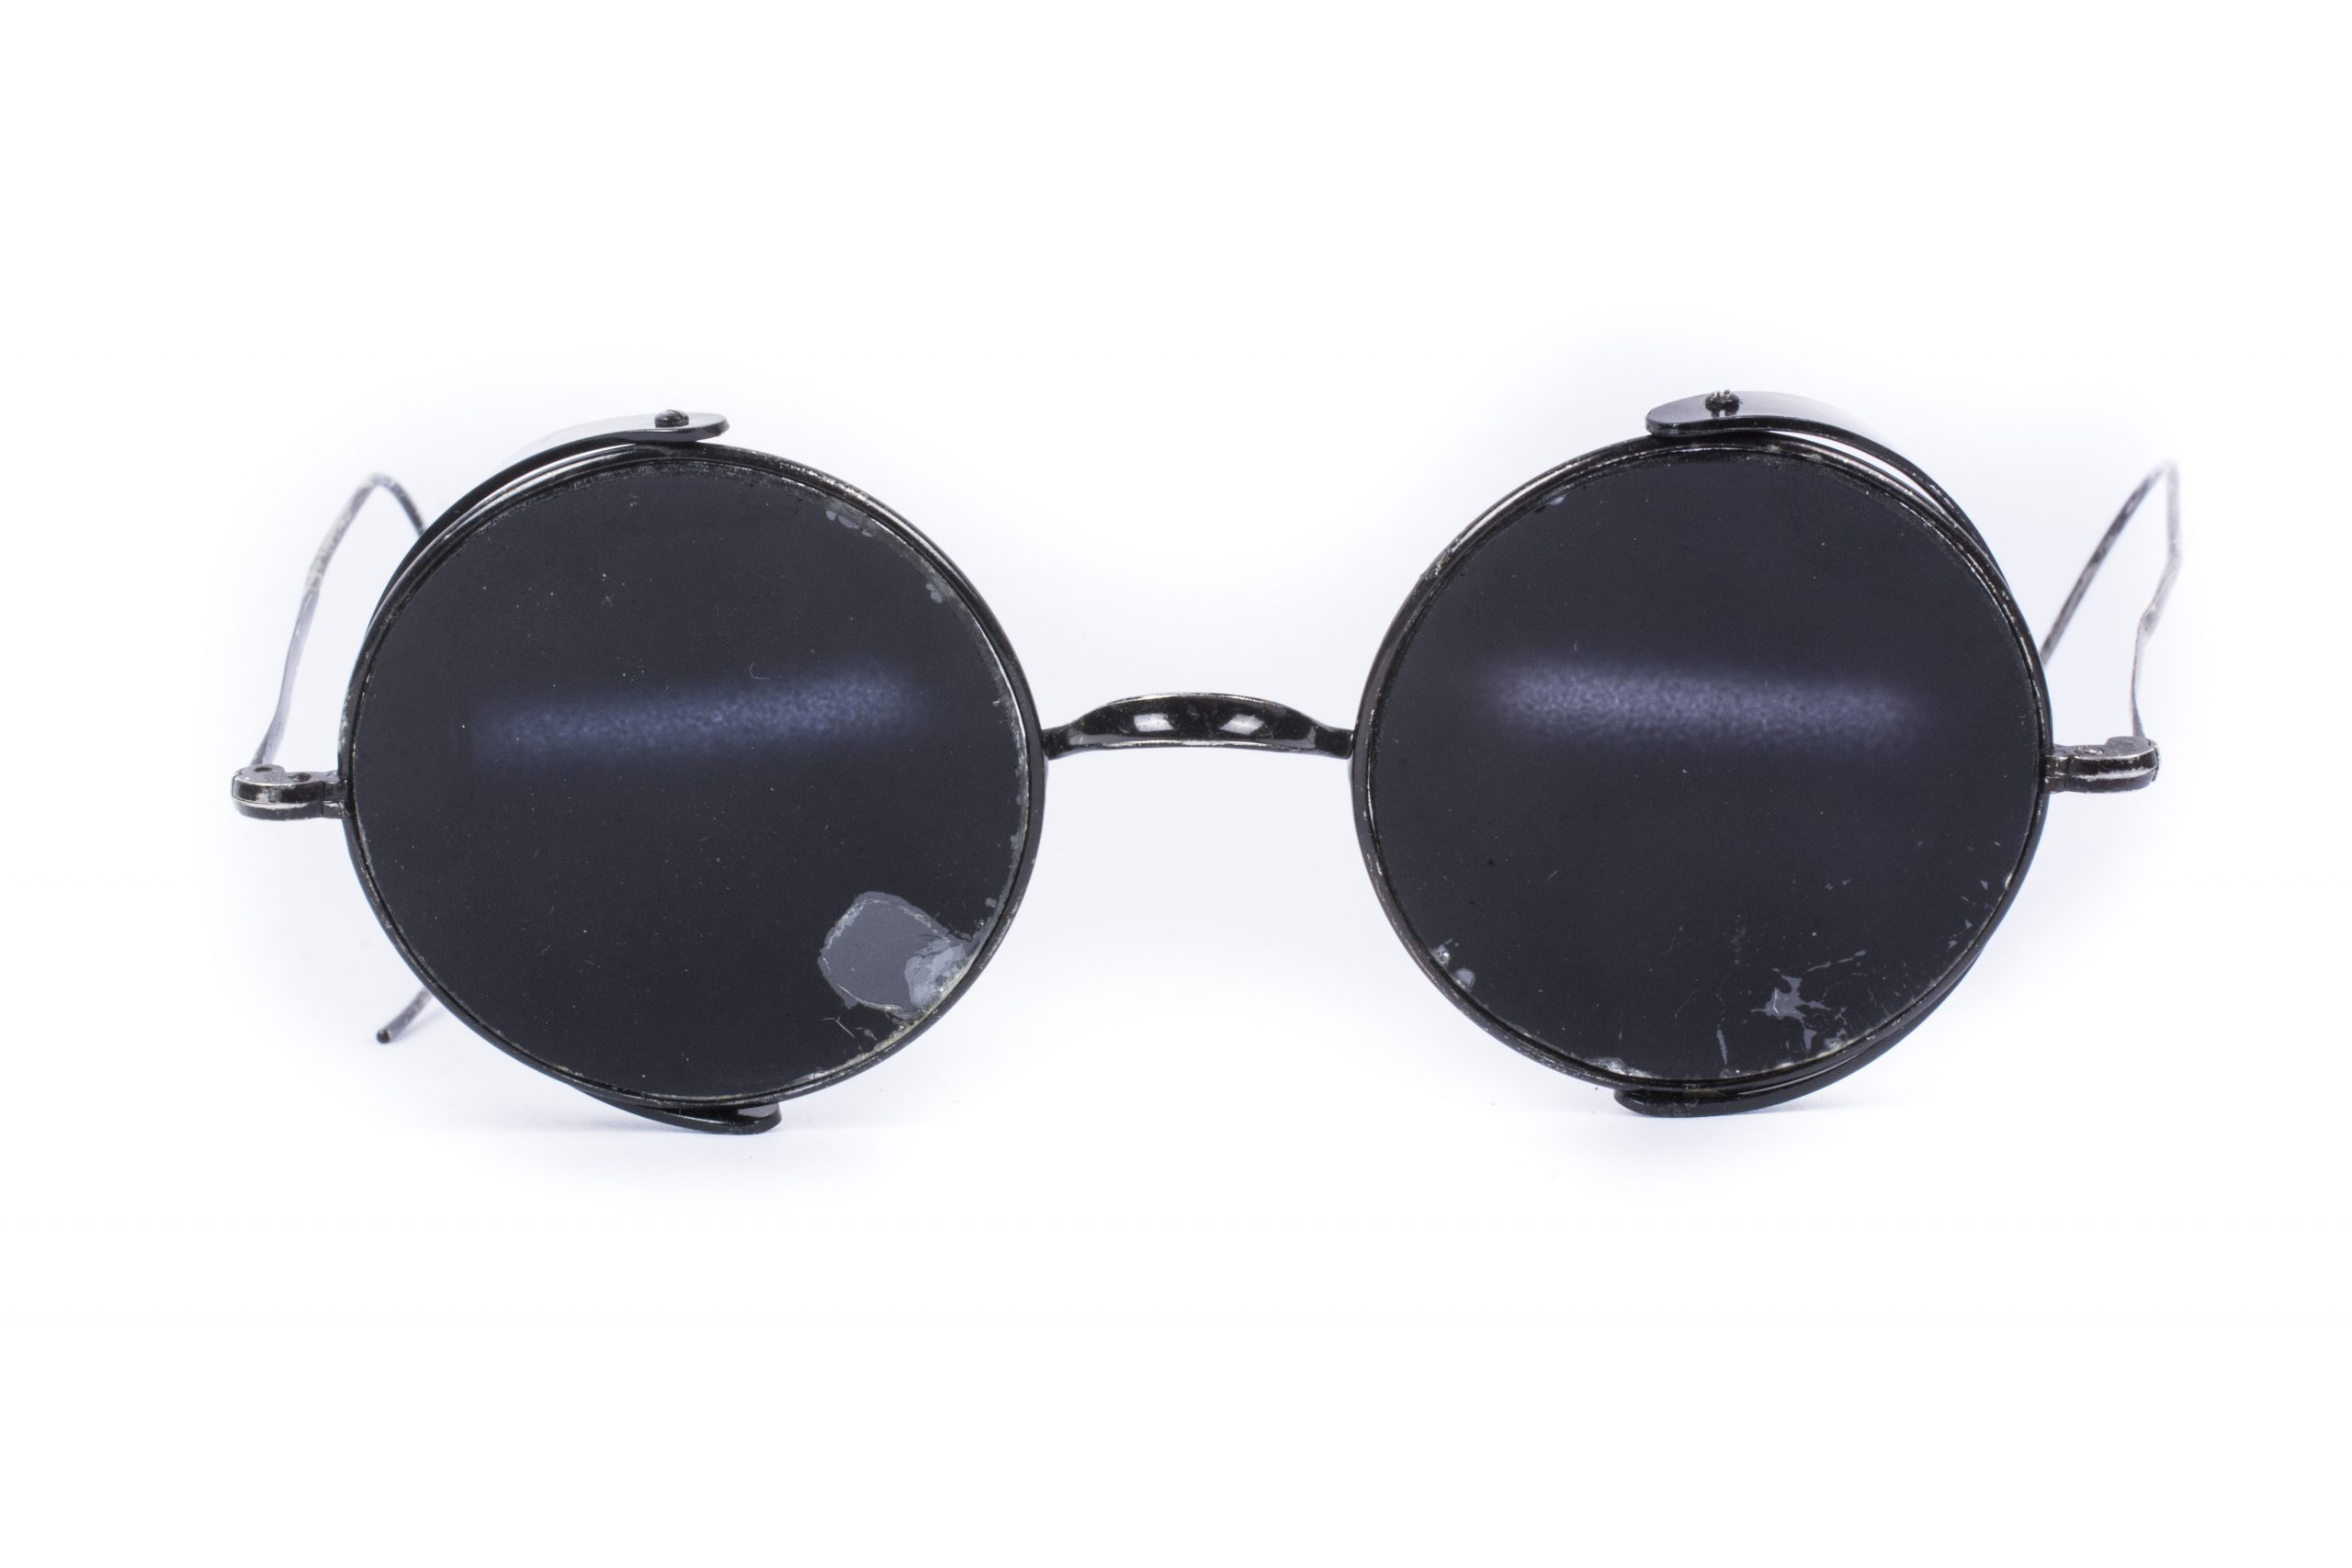 Vintage 1930’s sunglasses – fjm44